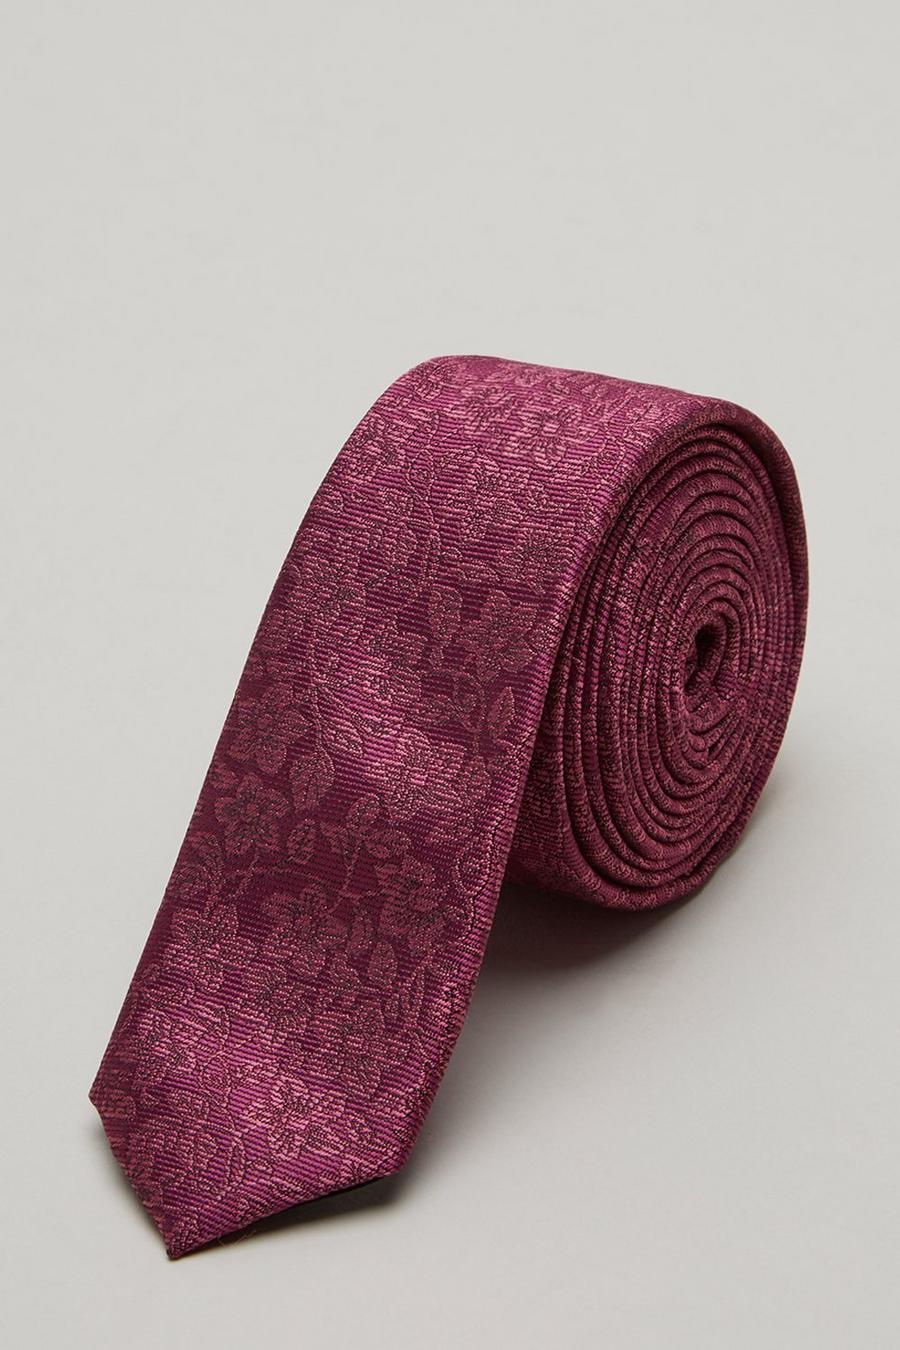 Burgundy Floral Skinny Tie And Pocket Square Set